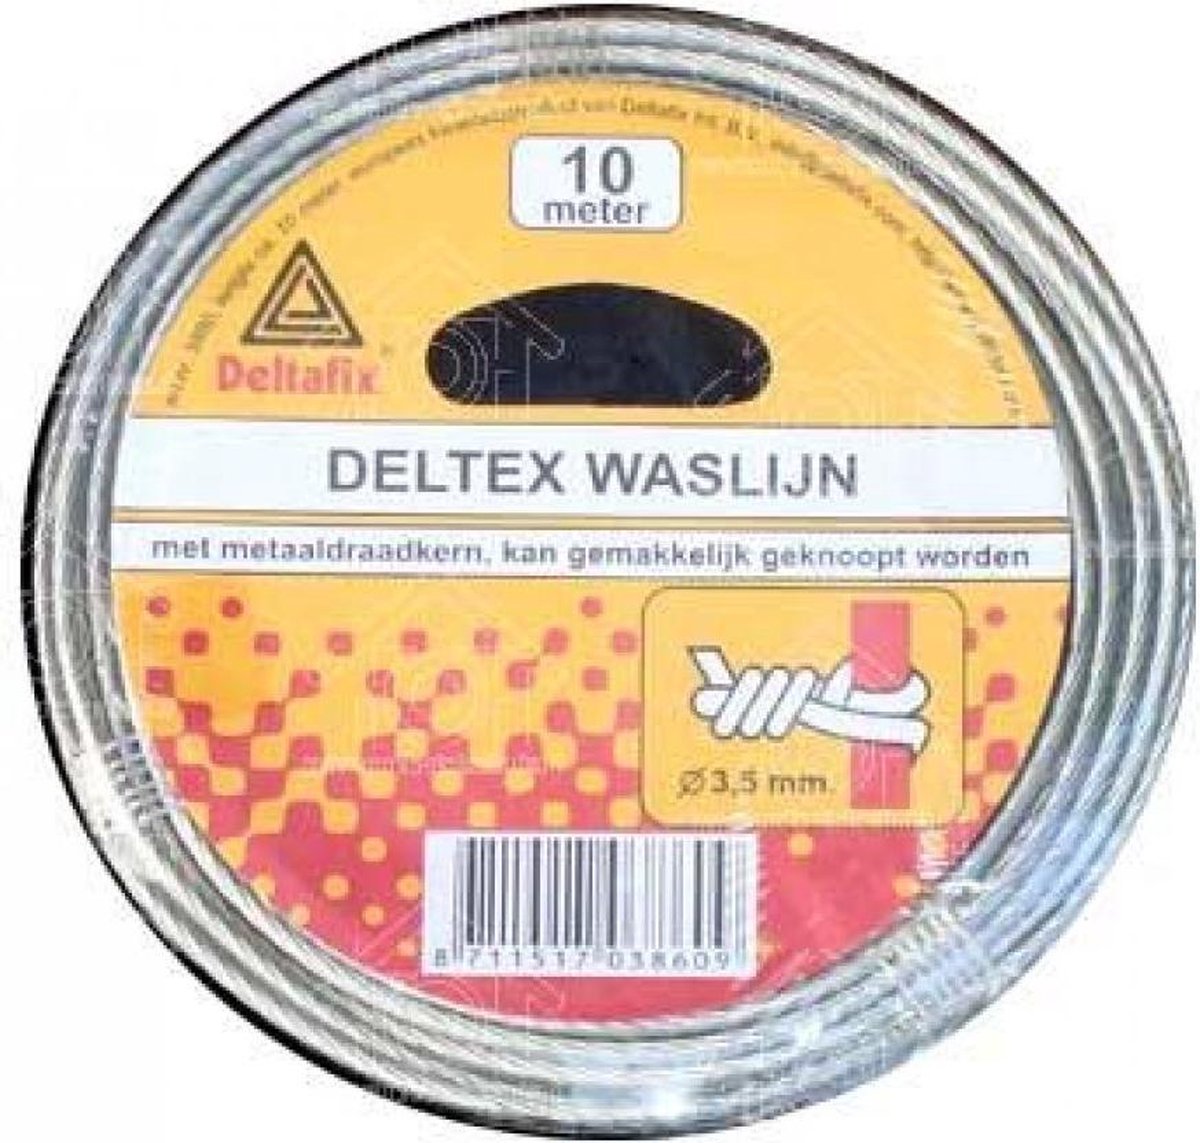 Deltafix Waslijn 10M. metaaldraadkern 3.5mm. Deltex.